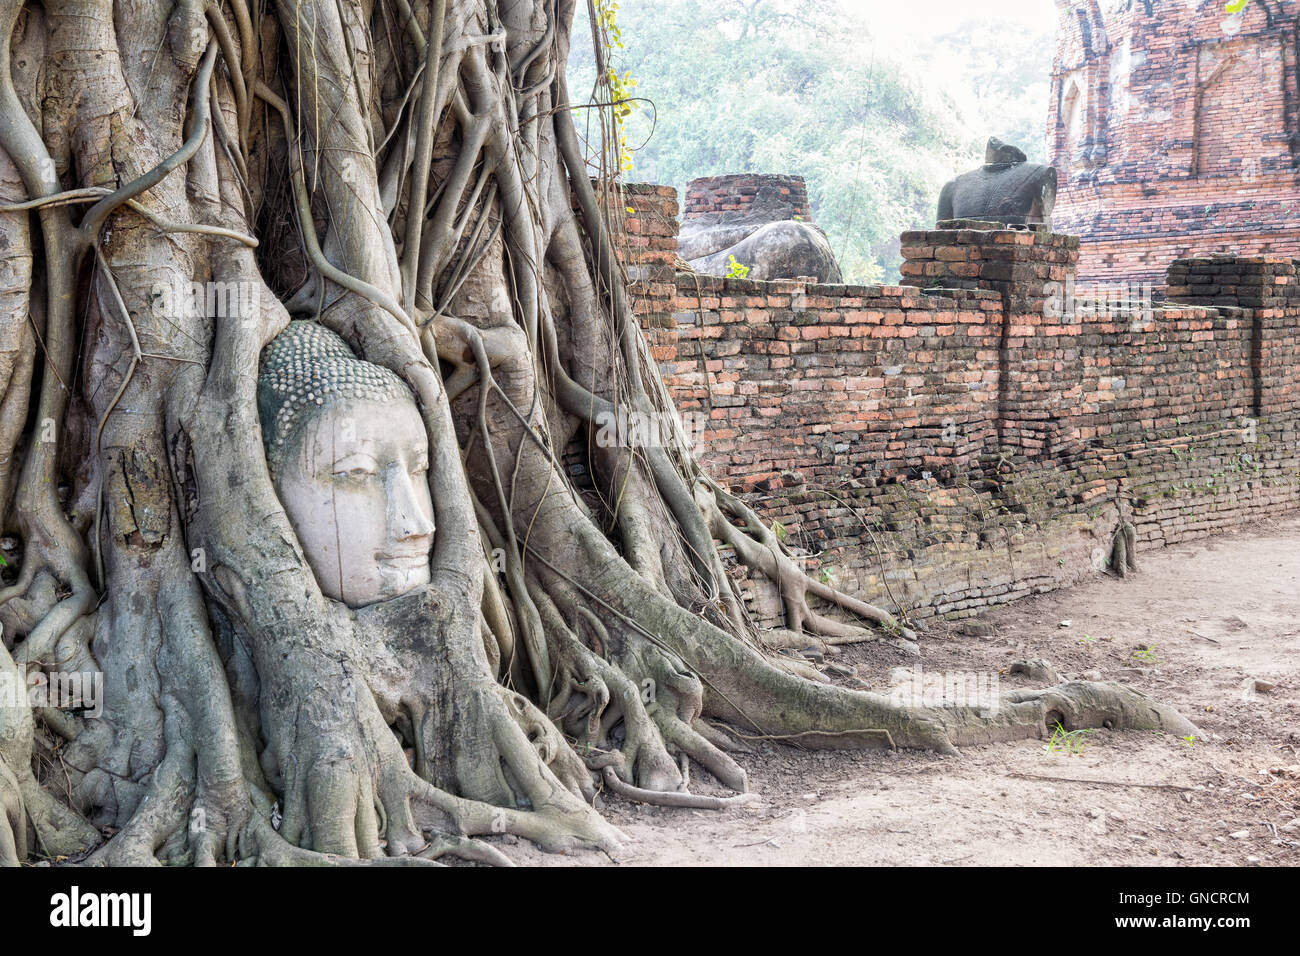 Leiter Teile Ruinen der alten Buddha-Statue waren die Wurzeln der Banyan-Baum auf der alten Stadtmauer am Tempel Wat Phra Mahathat bedeckt. Stockfoto